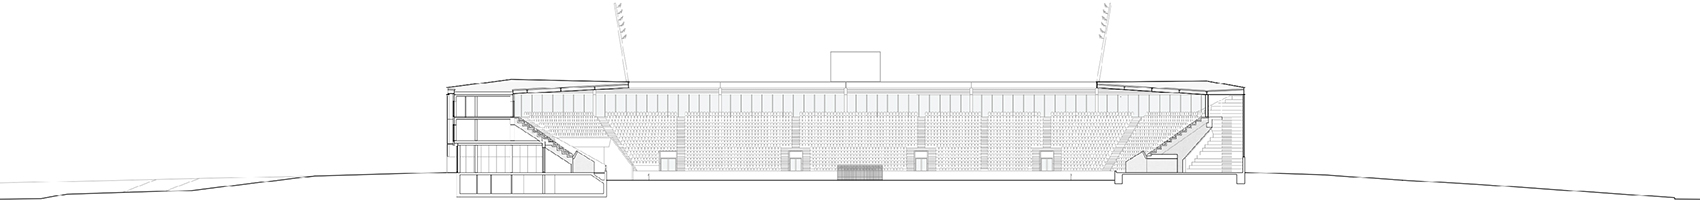 洛桑市新足球场馆，瑞士/散发宁静感的市郊体育设施-100